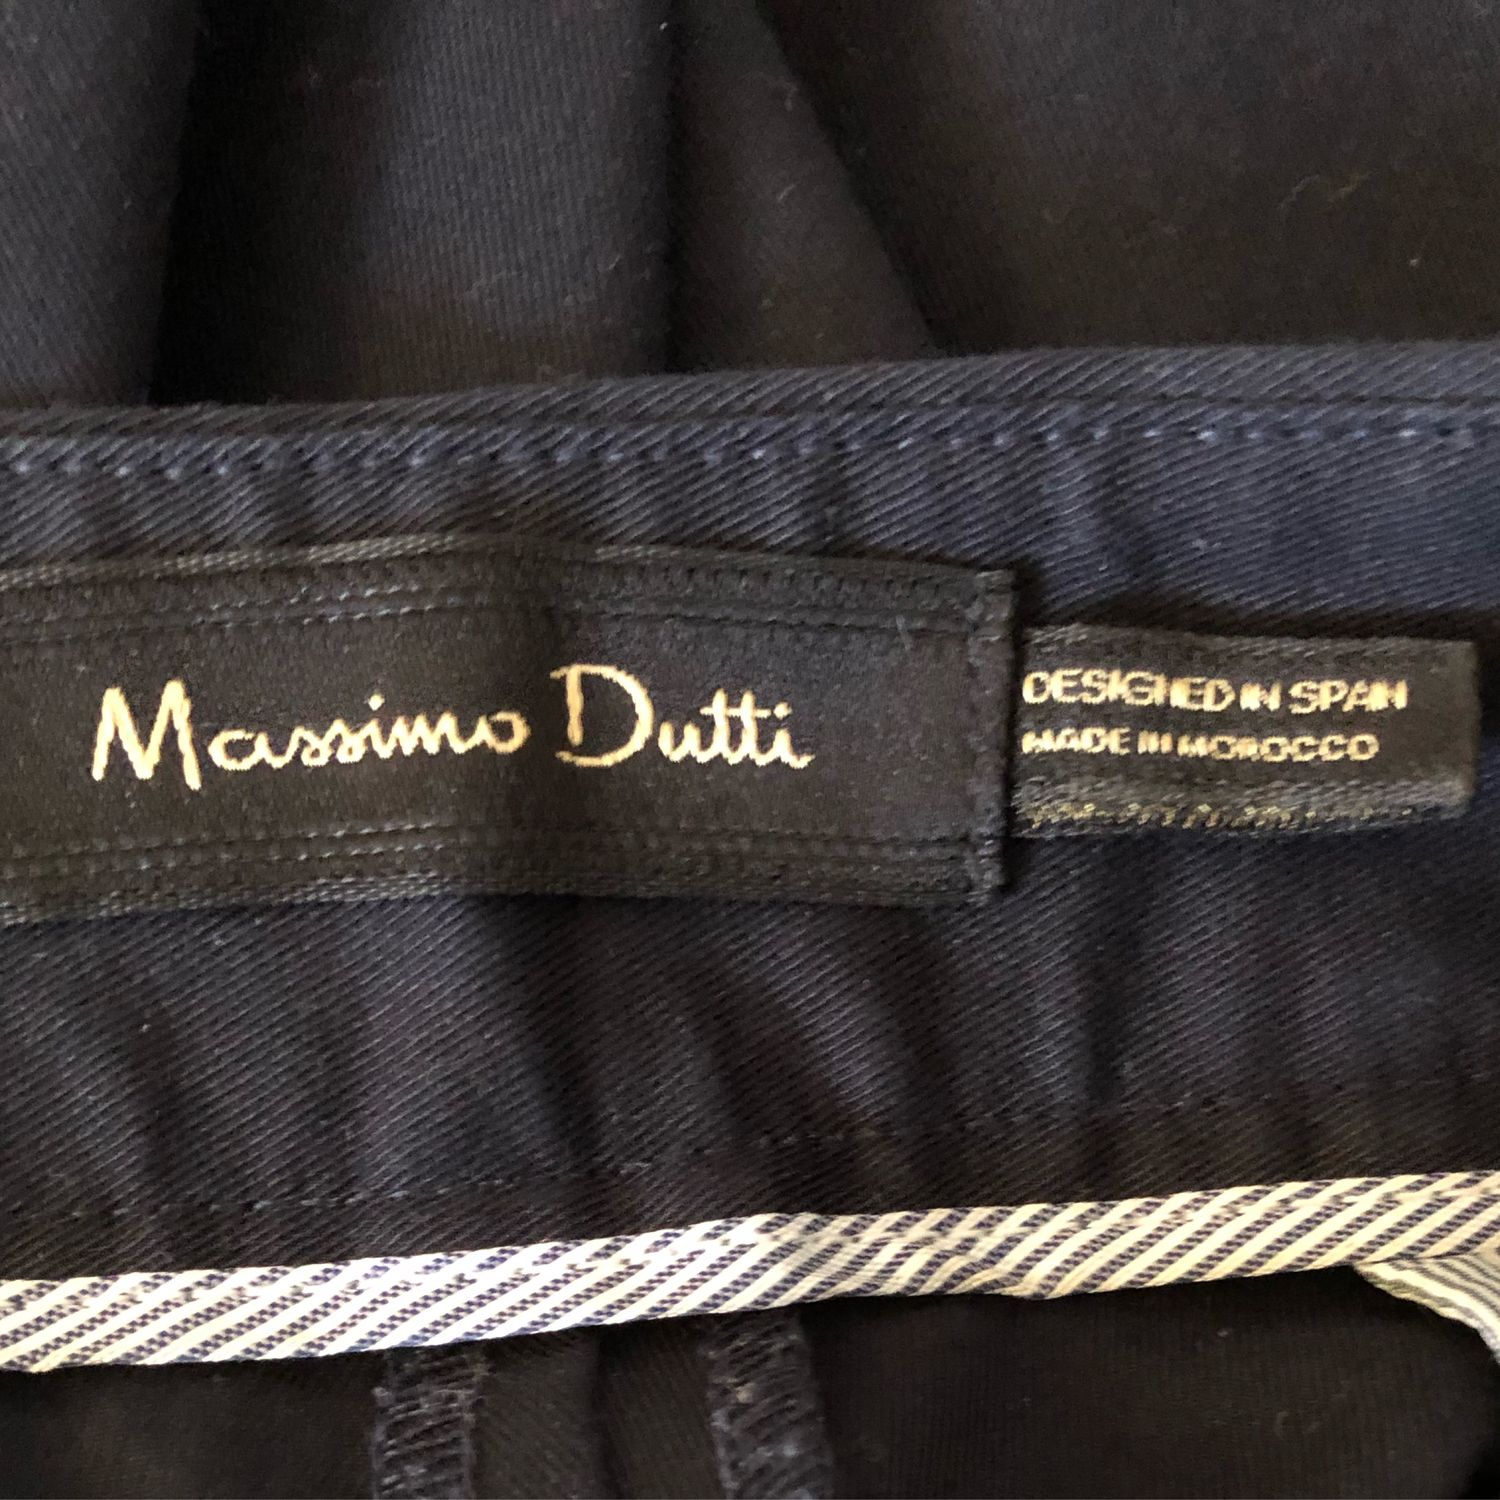 Винтаж: Стильные брендовые женские брюки Massimo Dutti купить винтернет-магазине Ярмарка Мастеров по цене 3800 ₽ – OF7SKRU